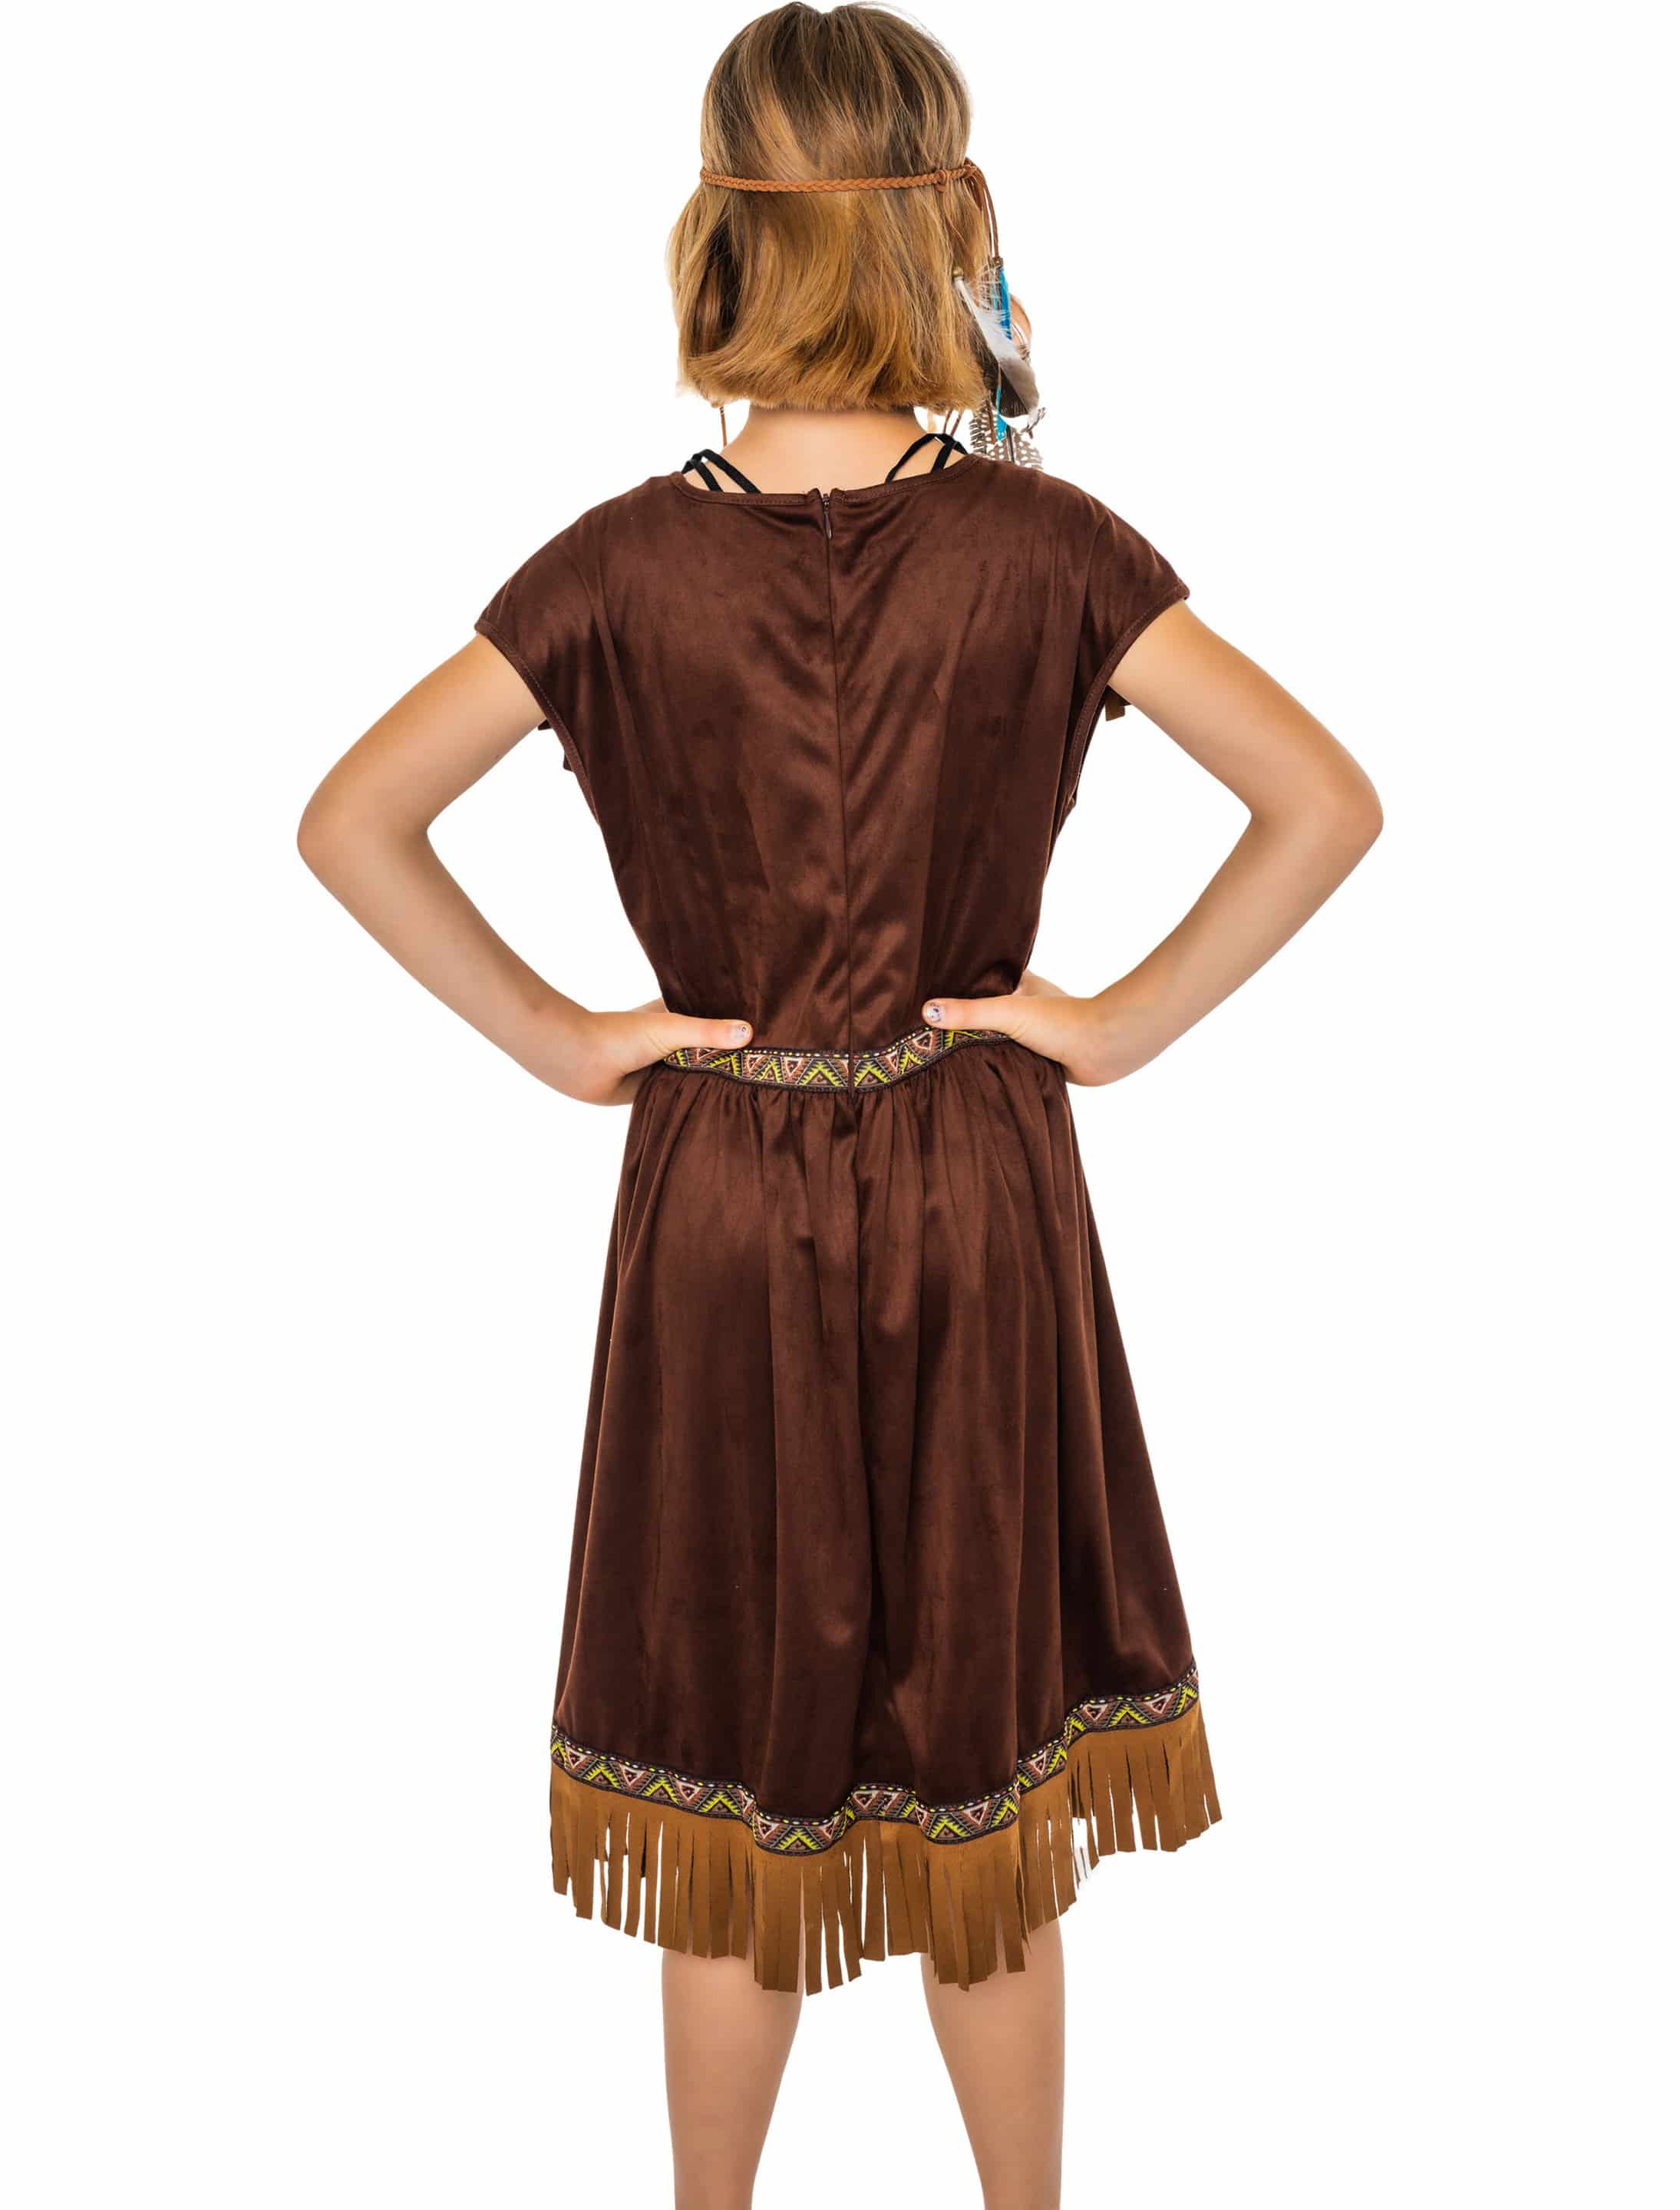 Kleid Indianerin Tahki Kinder Mädchen braun 140